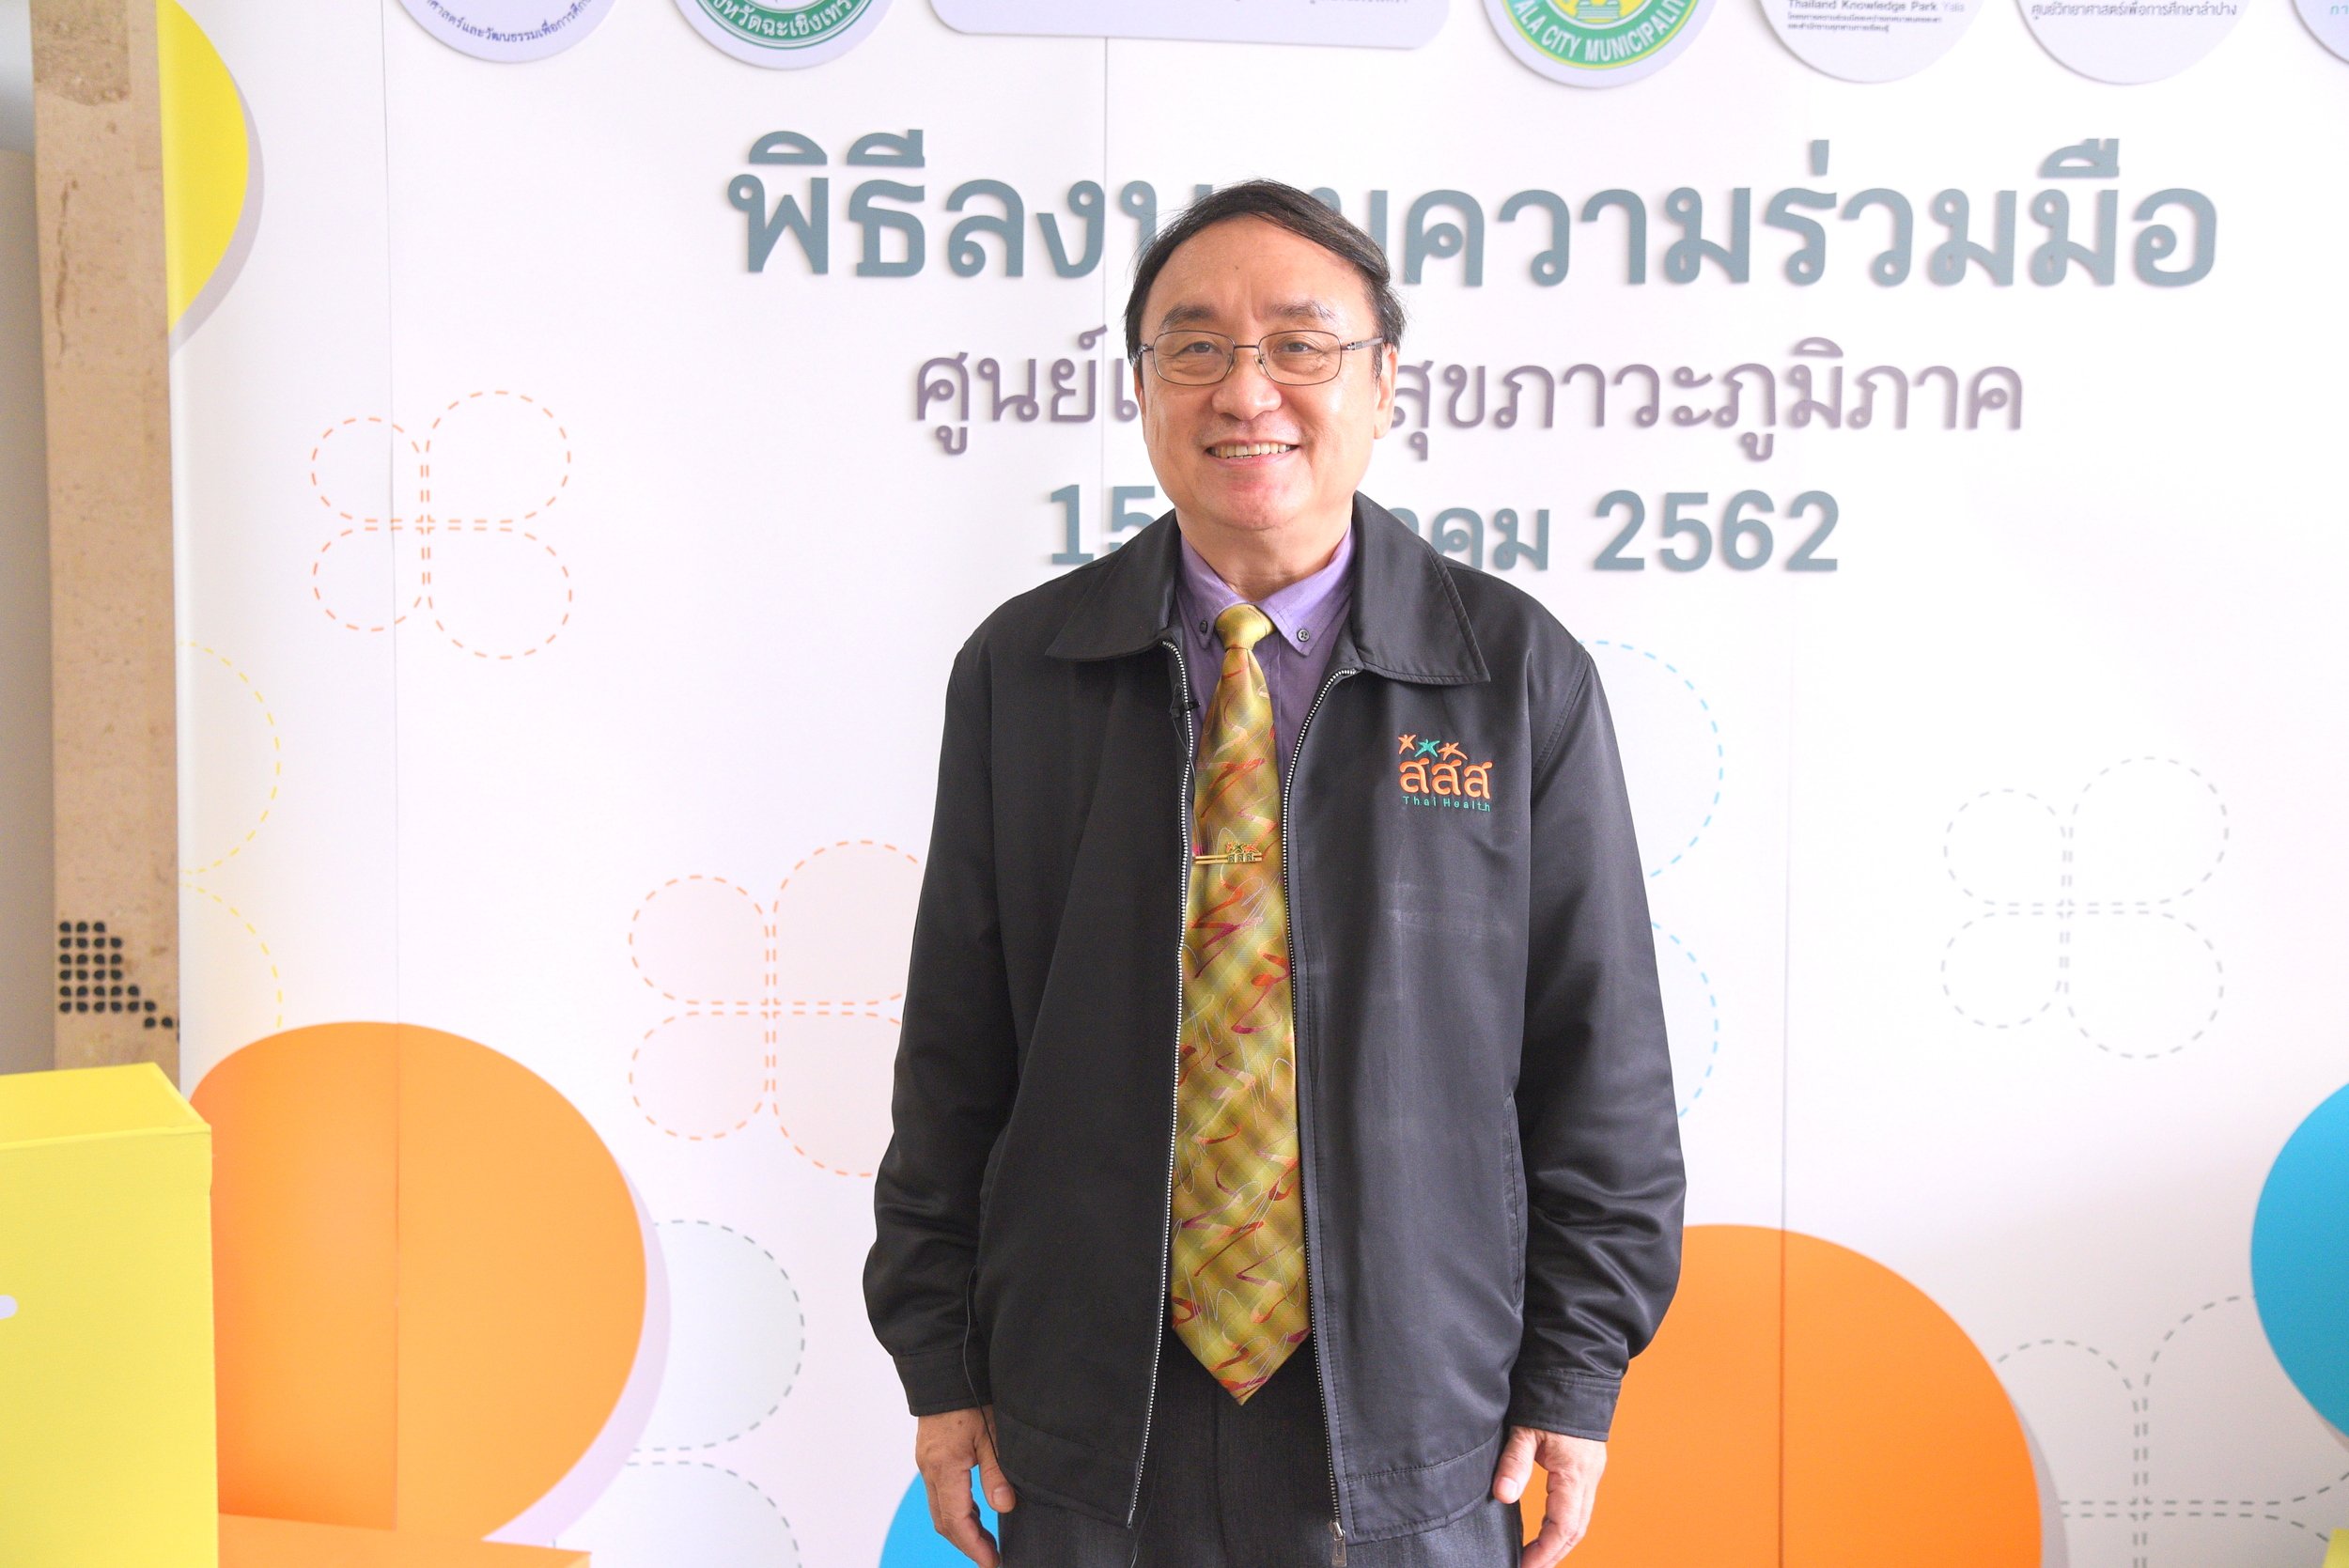 'ศูนย์เรียนรู้สุขภาวะภูมิภาค' ปลุกต้นแบบสุขภาวะทั่วถิ่นแดนไทย thaihealth